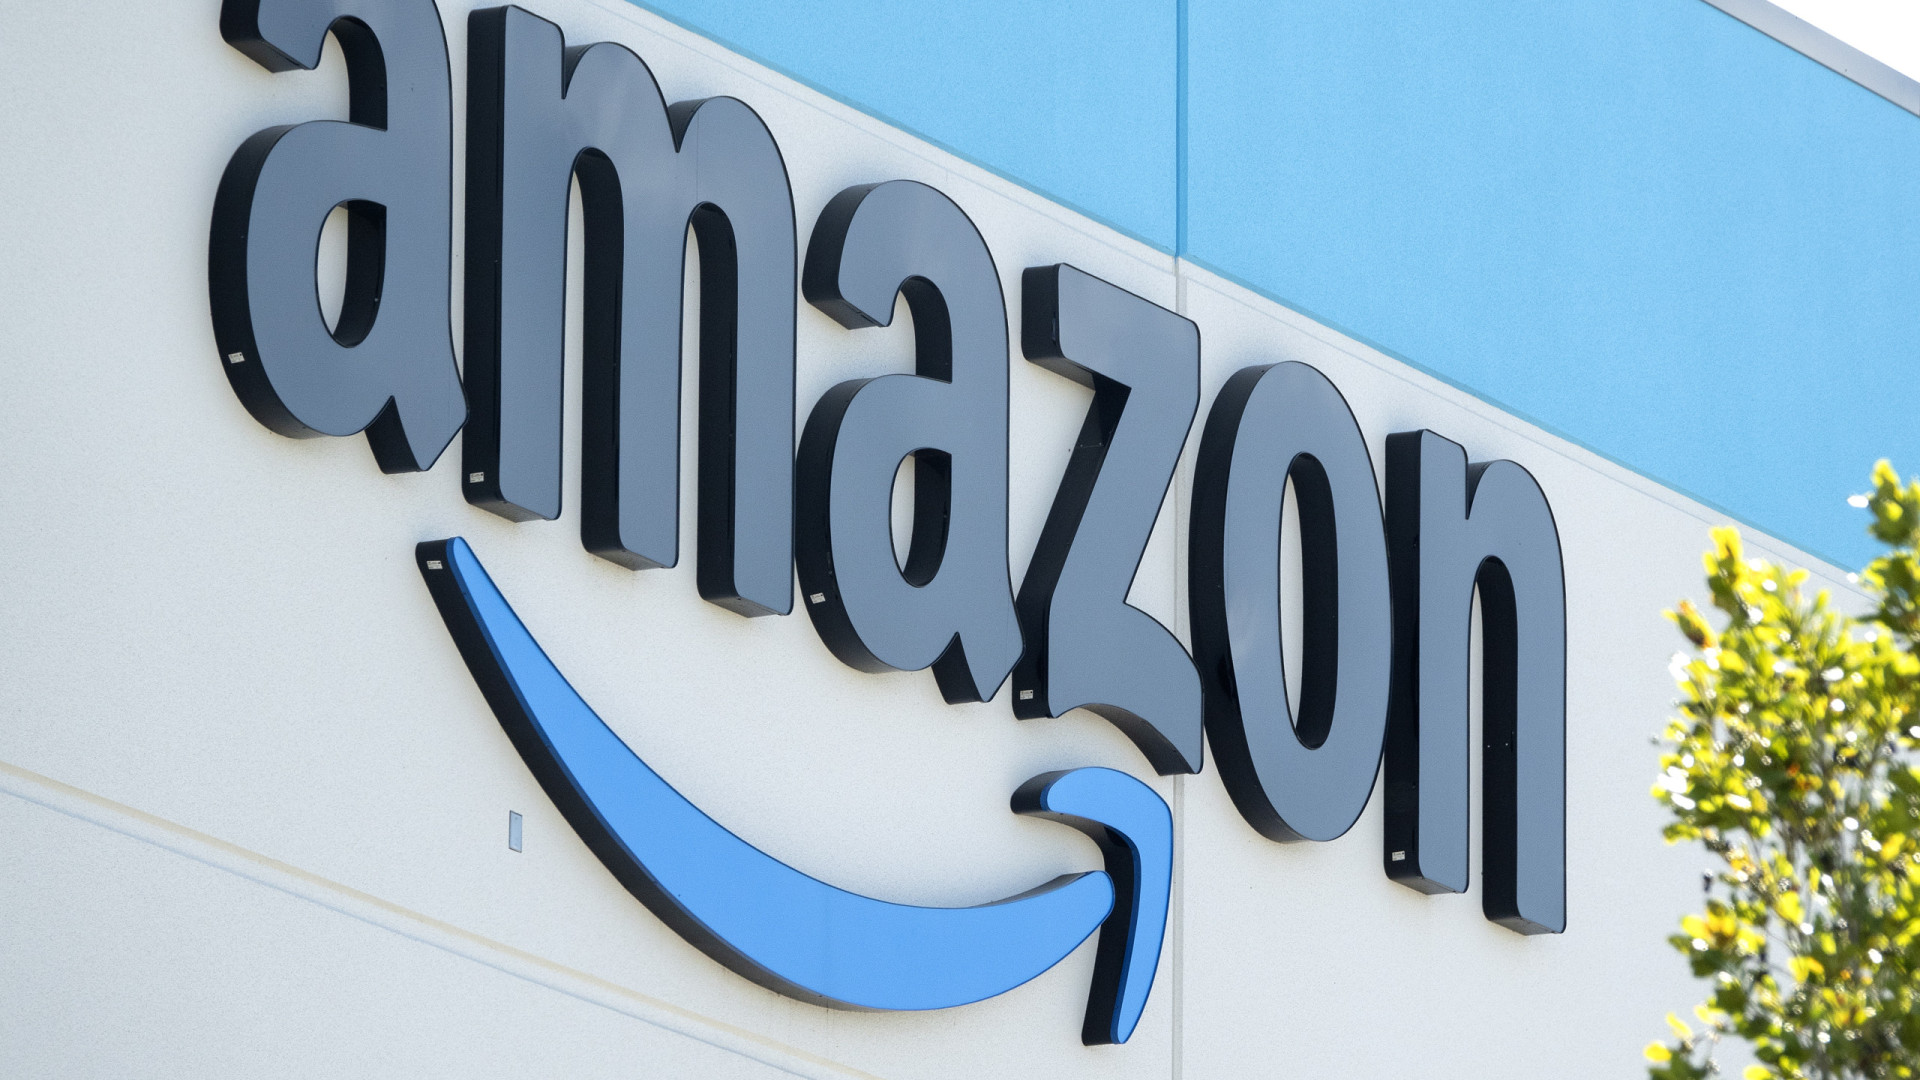 Norte-americana Amazon investe cerca de 124 bilhões na Índia até 2030